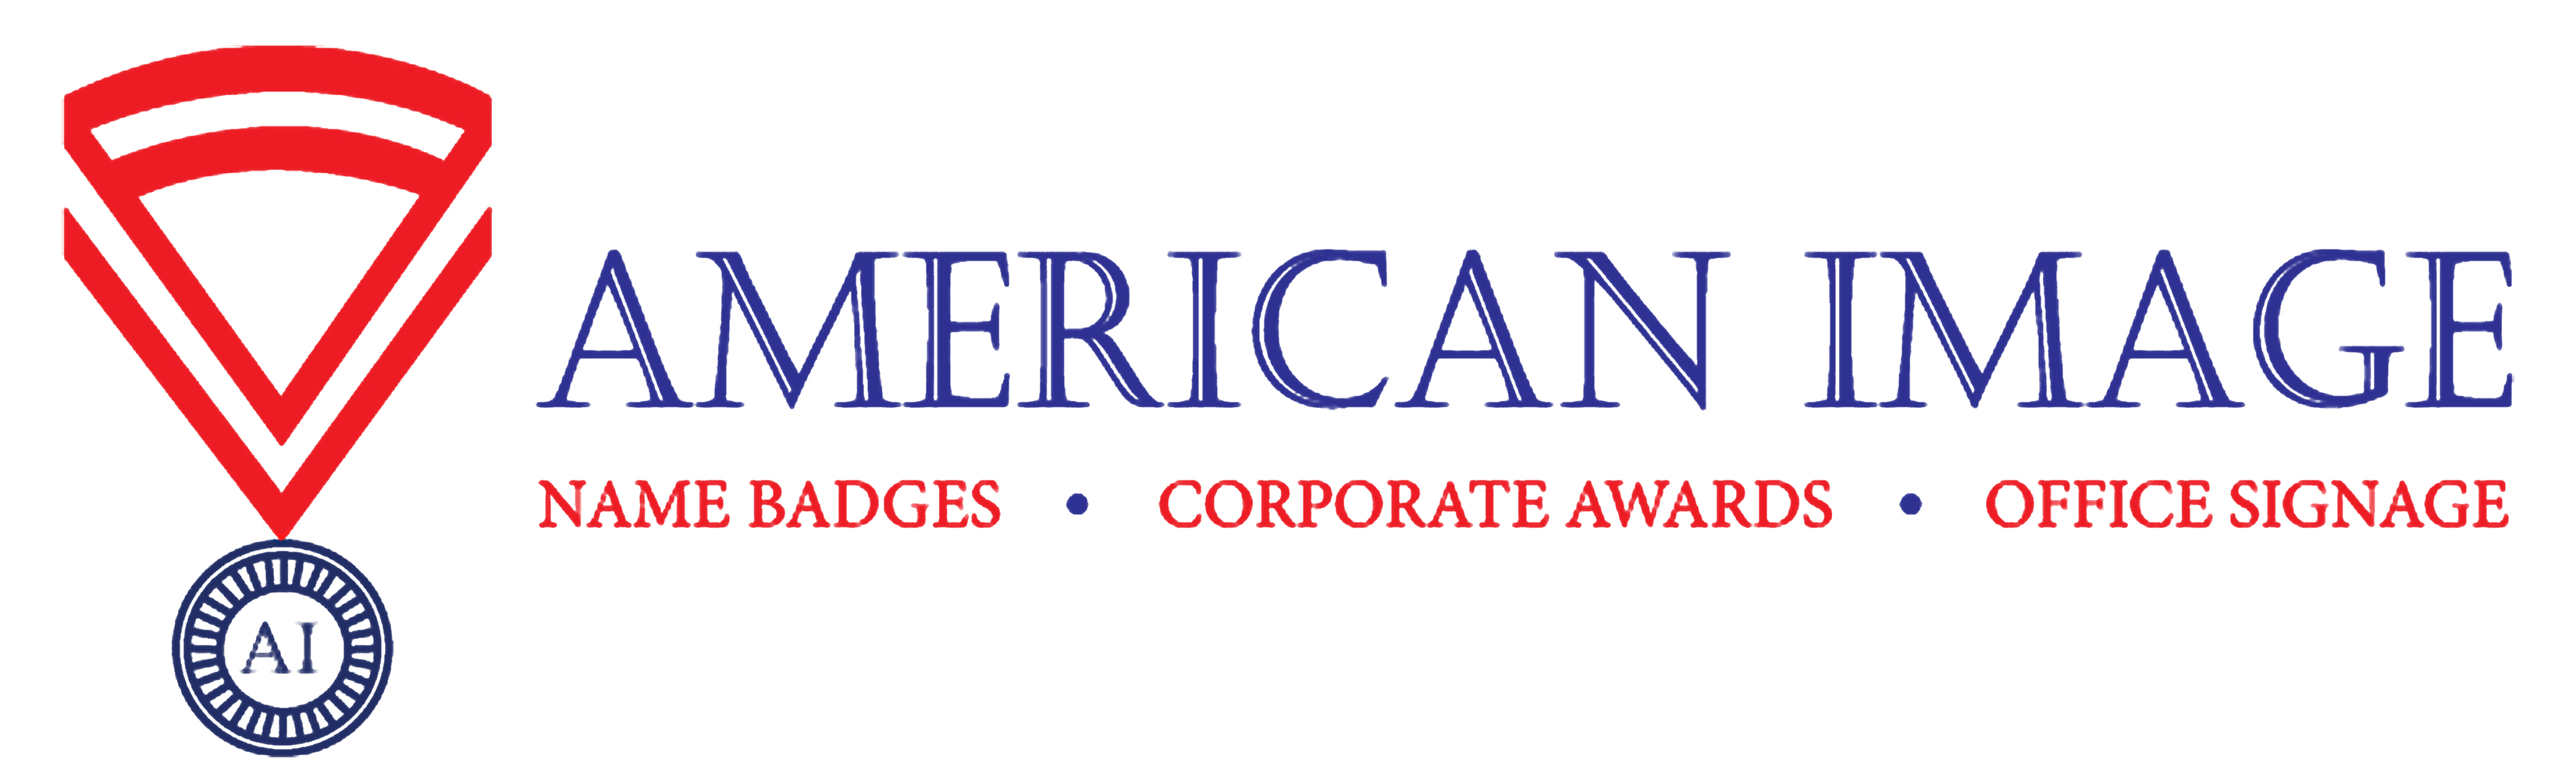 Signage, Name badges and Custom Awards - AmericanImageAwards.com